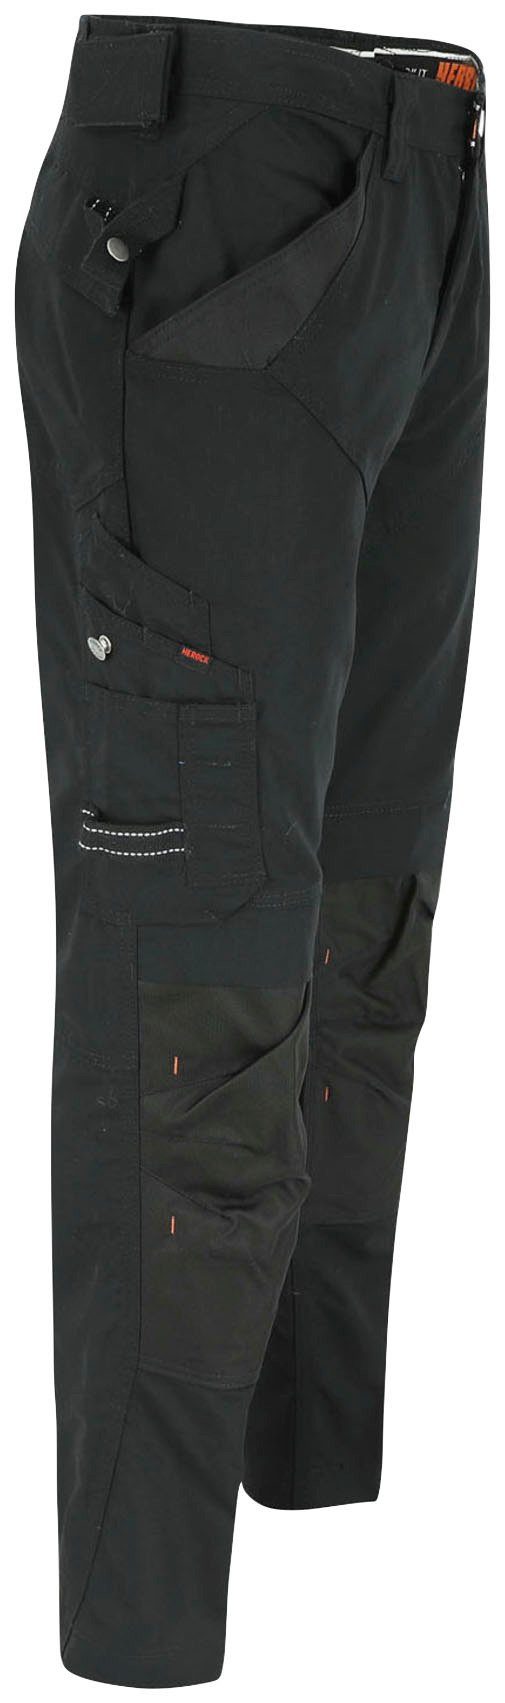 Wasserabweisend Regelbarer - Bund Taschen Herock - 8 & bequem schwarz leicht - Hose Apollo Arbeitshose